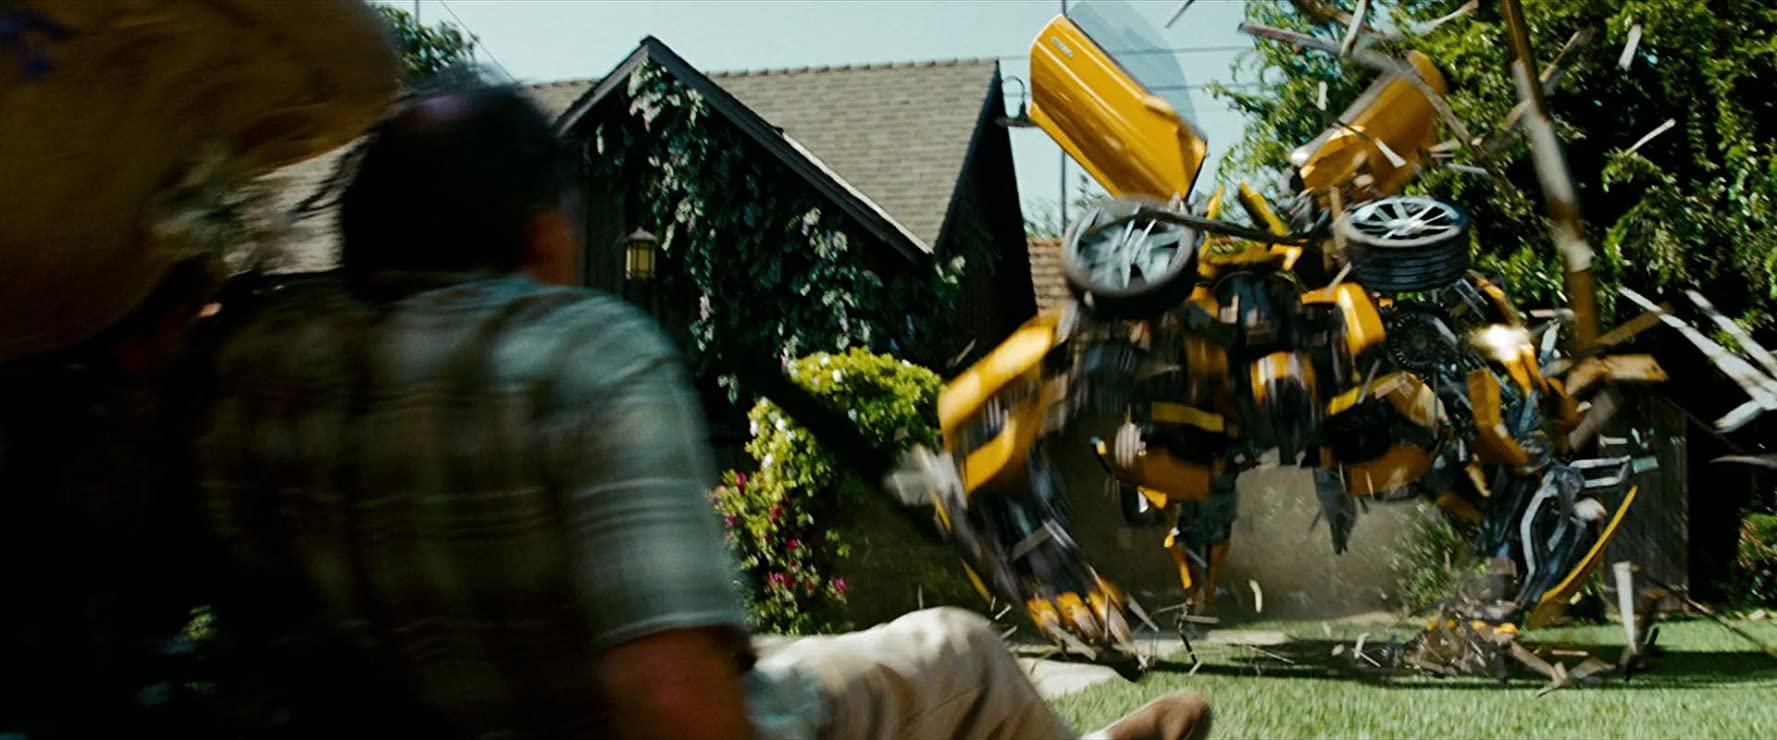 مشاهدة فيلم Transformers Revenge Of The Fallen (2009) مترجم